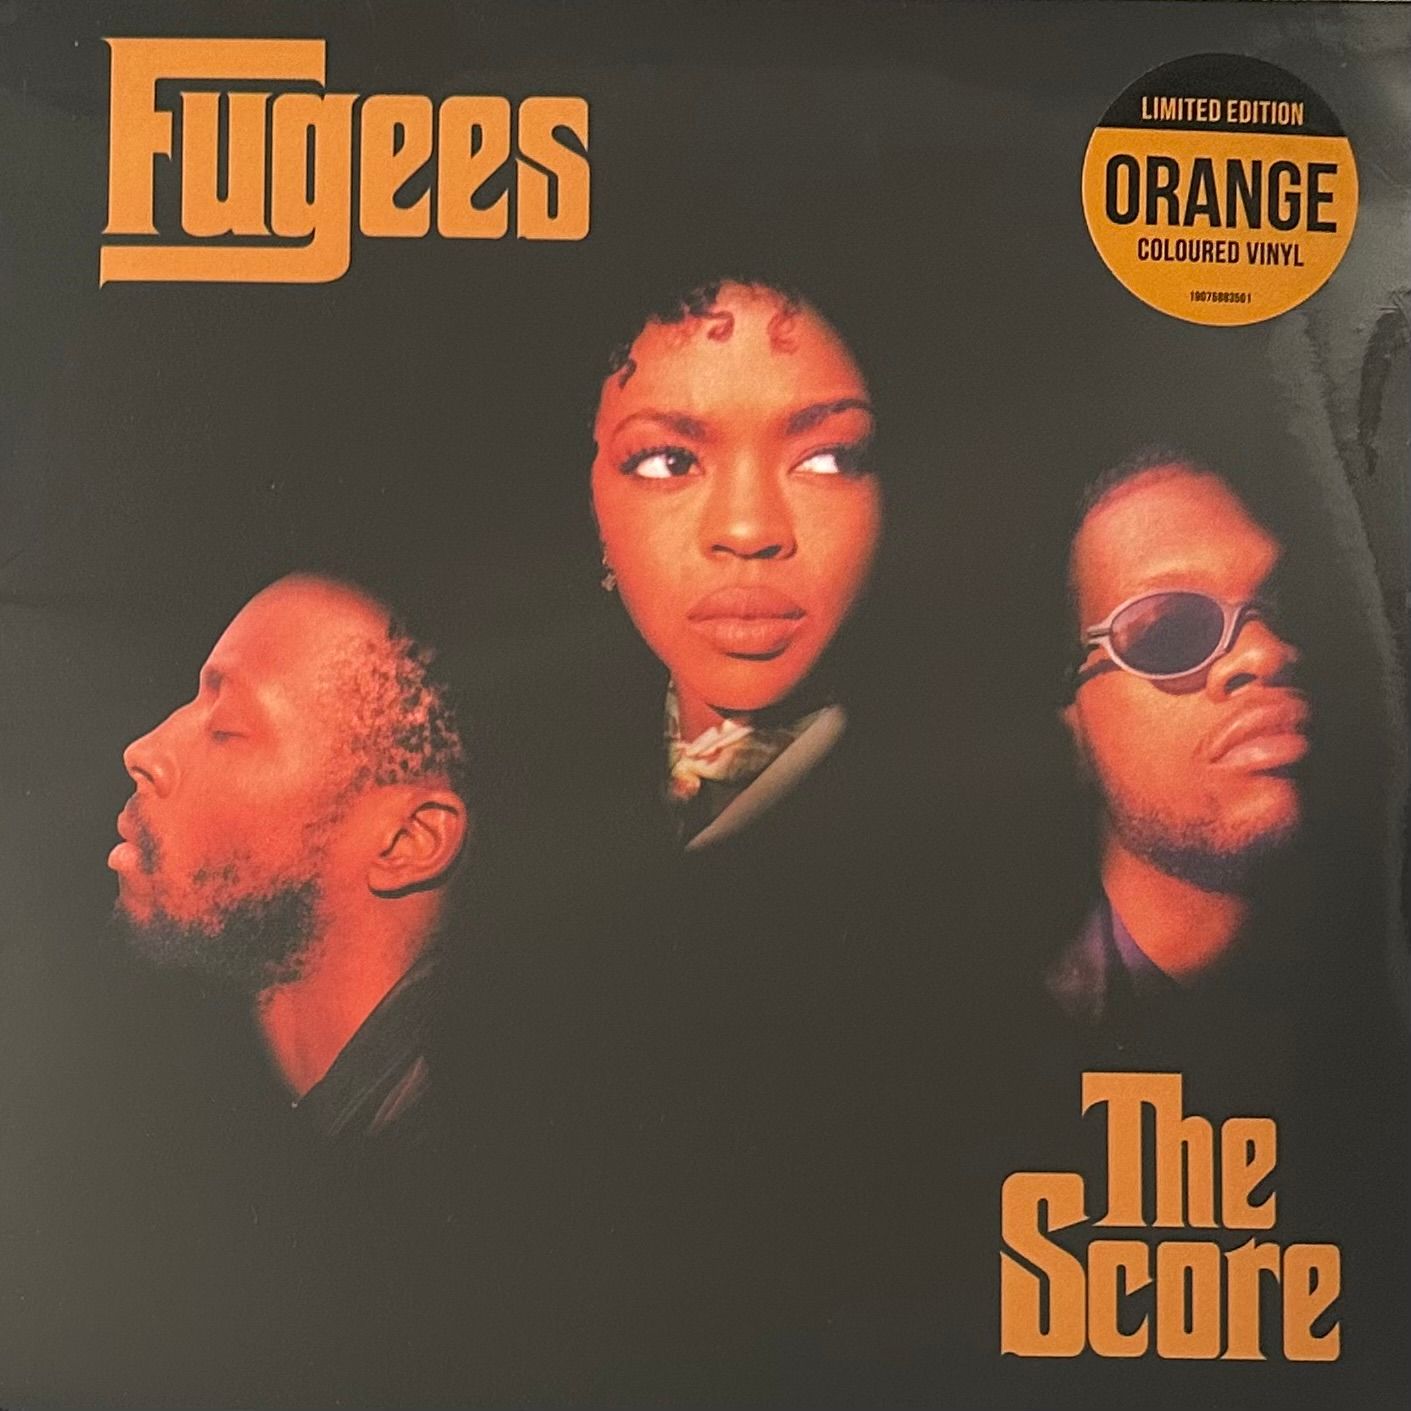 Fugees ‎– The Score 2LP (Европа 2017г.) Orange